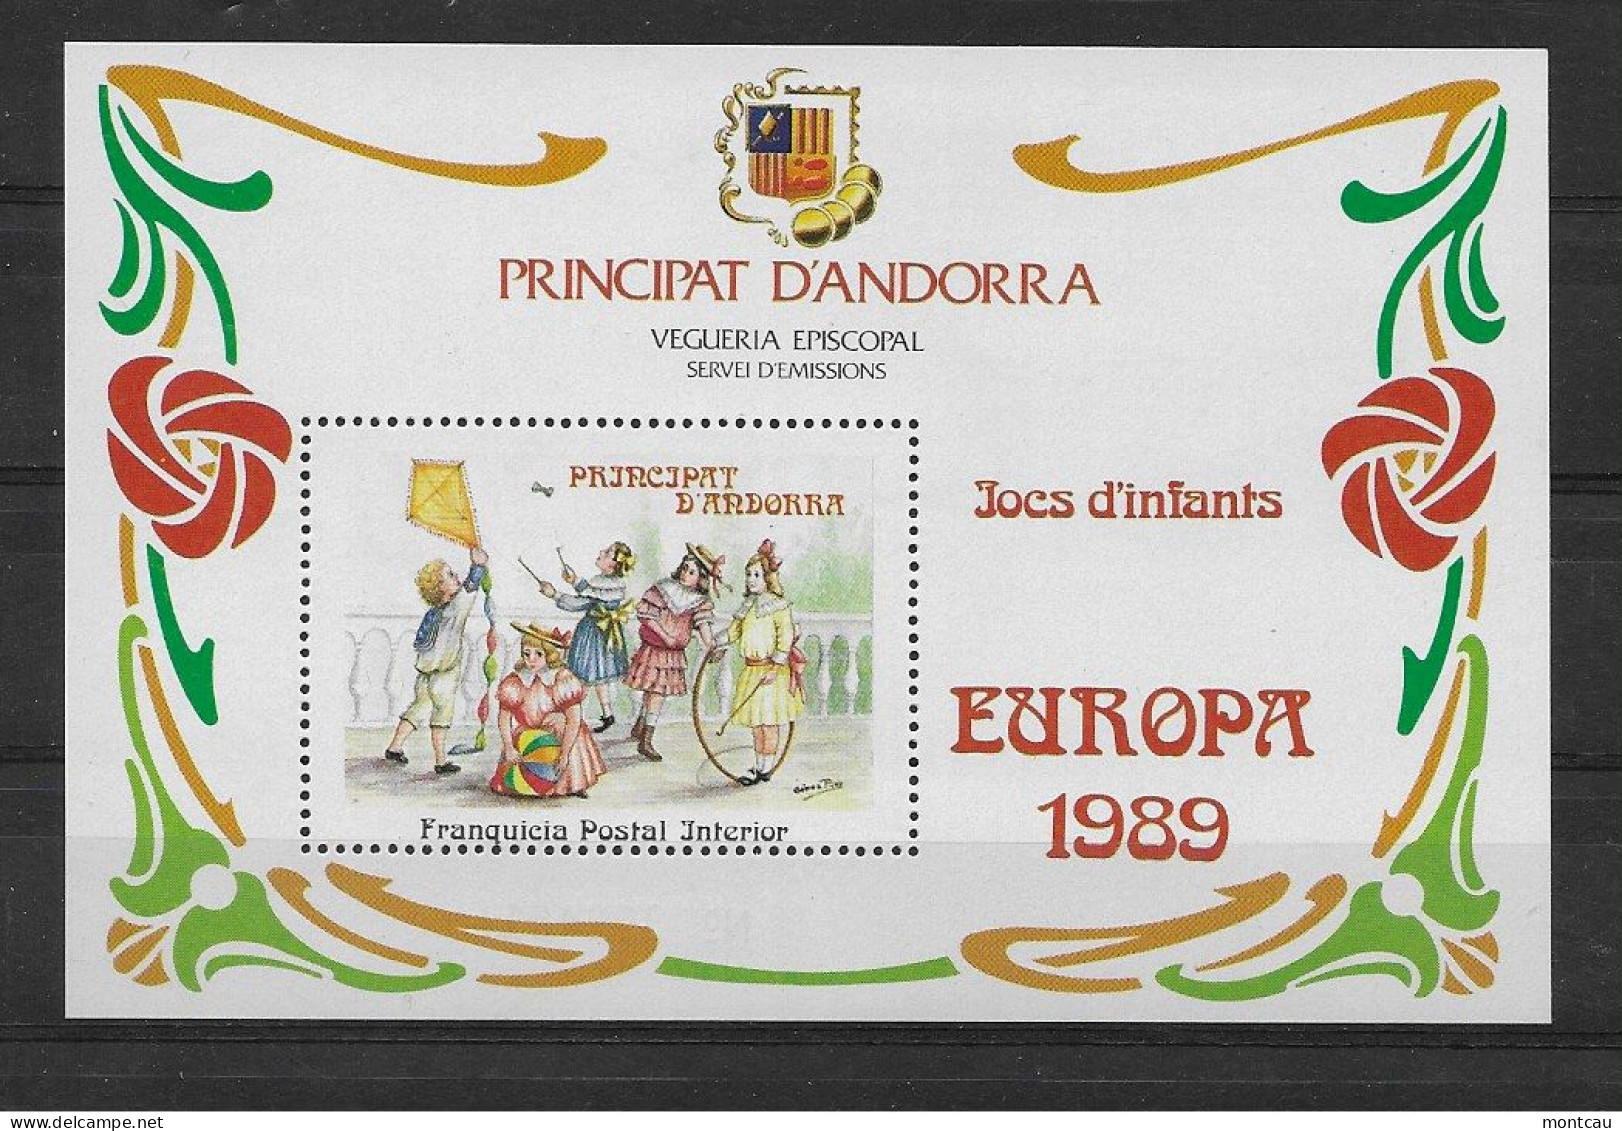 Andorra - 1989 - Vegueria Episcopal Europa - Episcopal Viguerie